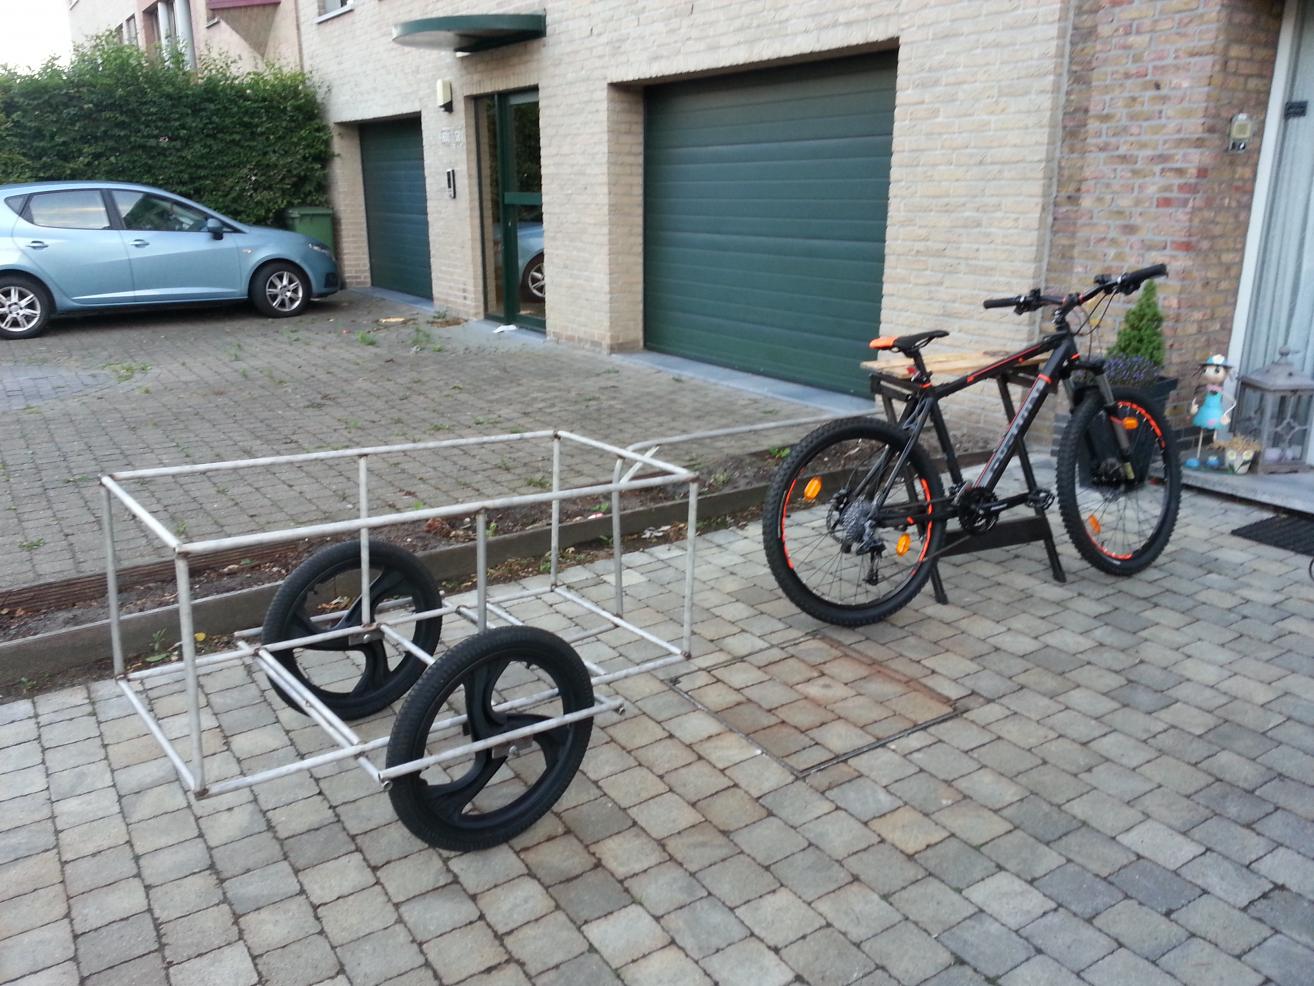 Schuur federatie Rustiek Mijn home made fietskar - Voertuigen - Preppers.nl Forum